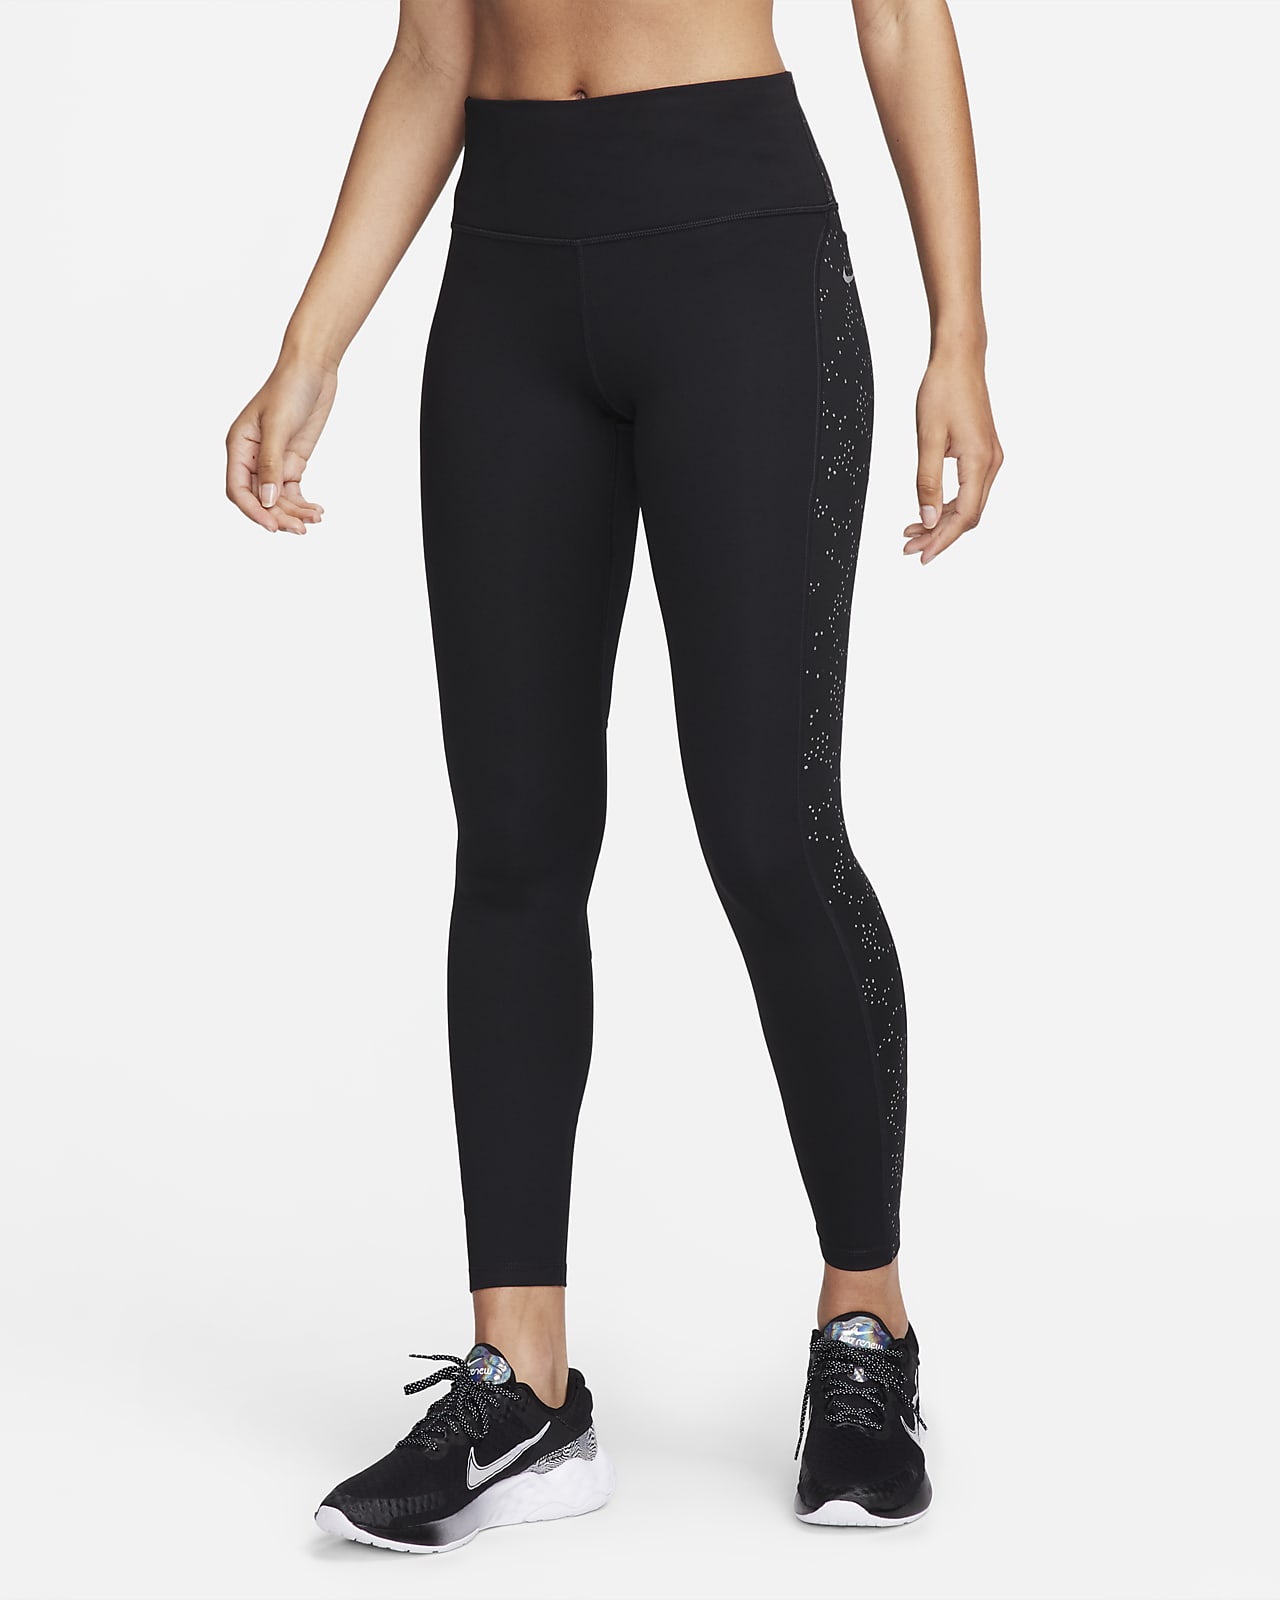 Nike Epic Fast Mid-Rise Pocket Running Leggings Women - Black